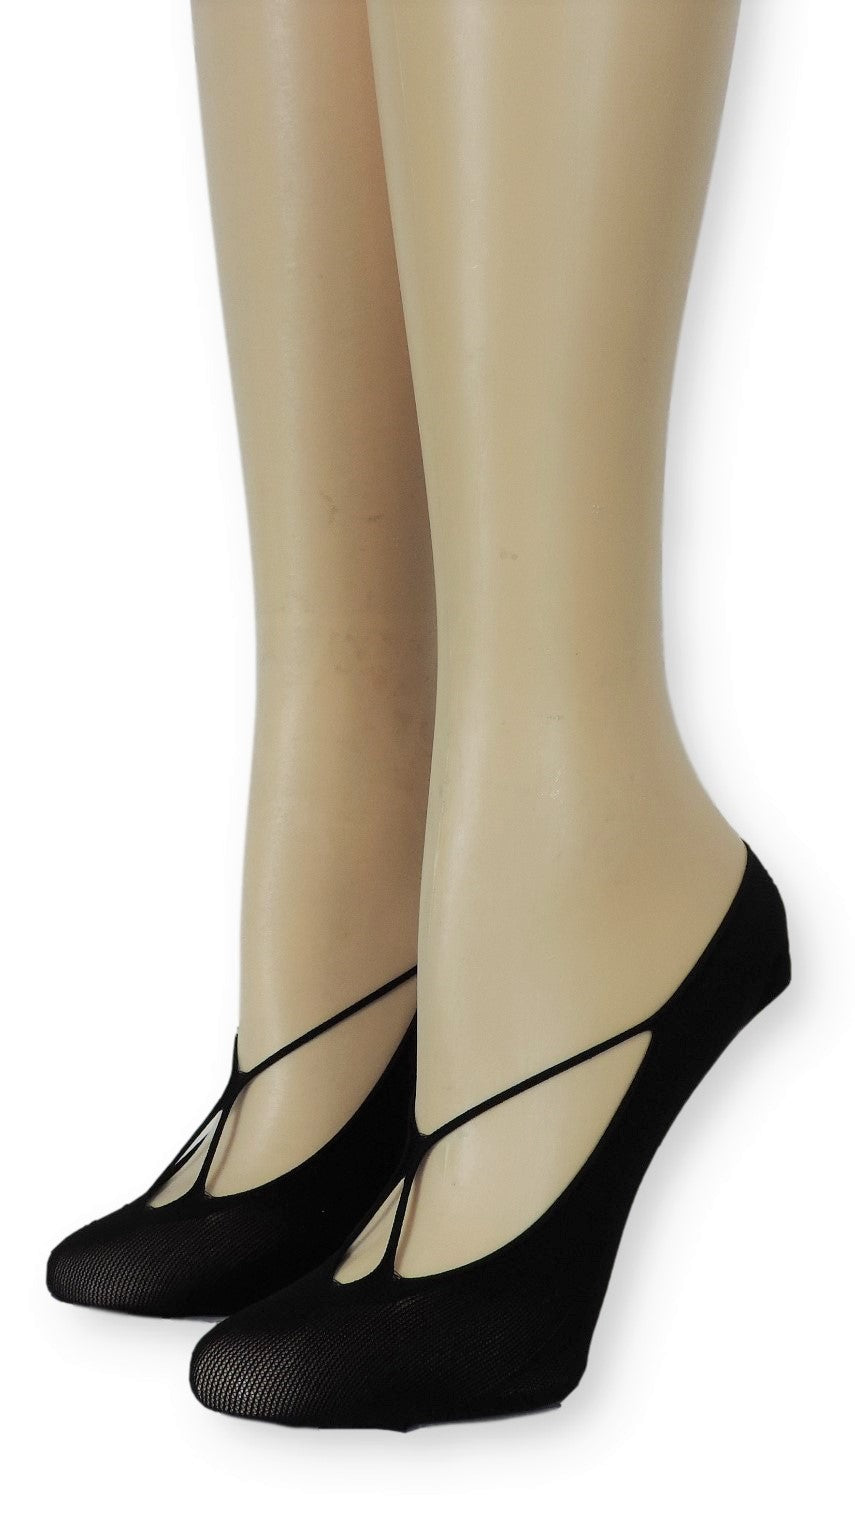 Ebon Ankle Mesh Socks - Global Trendz Fashion®